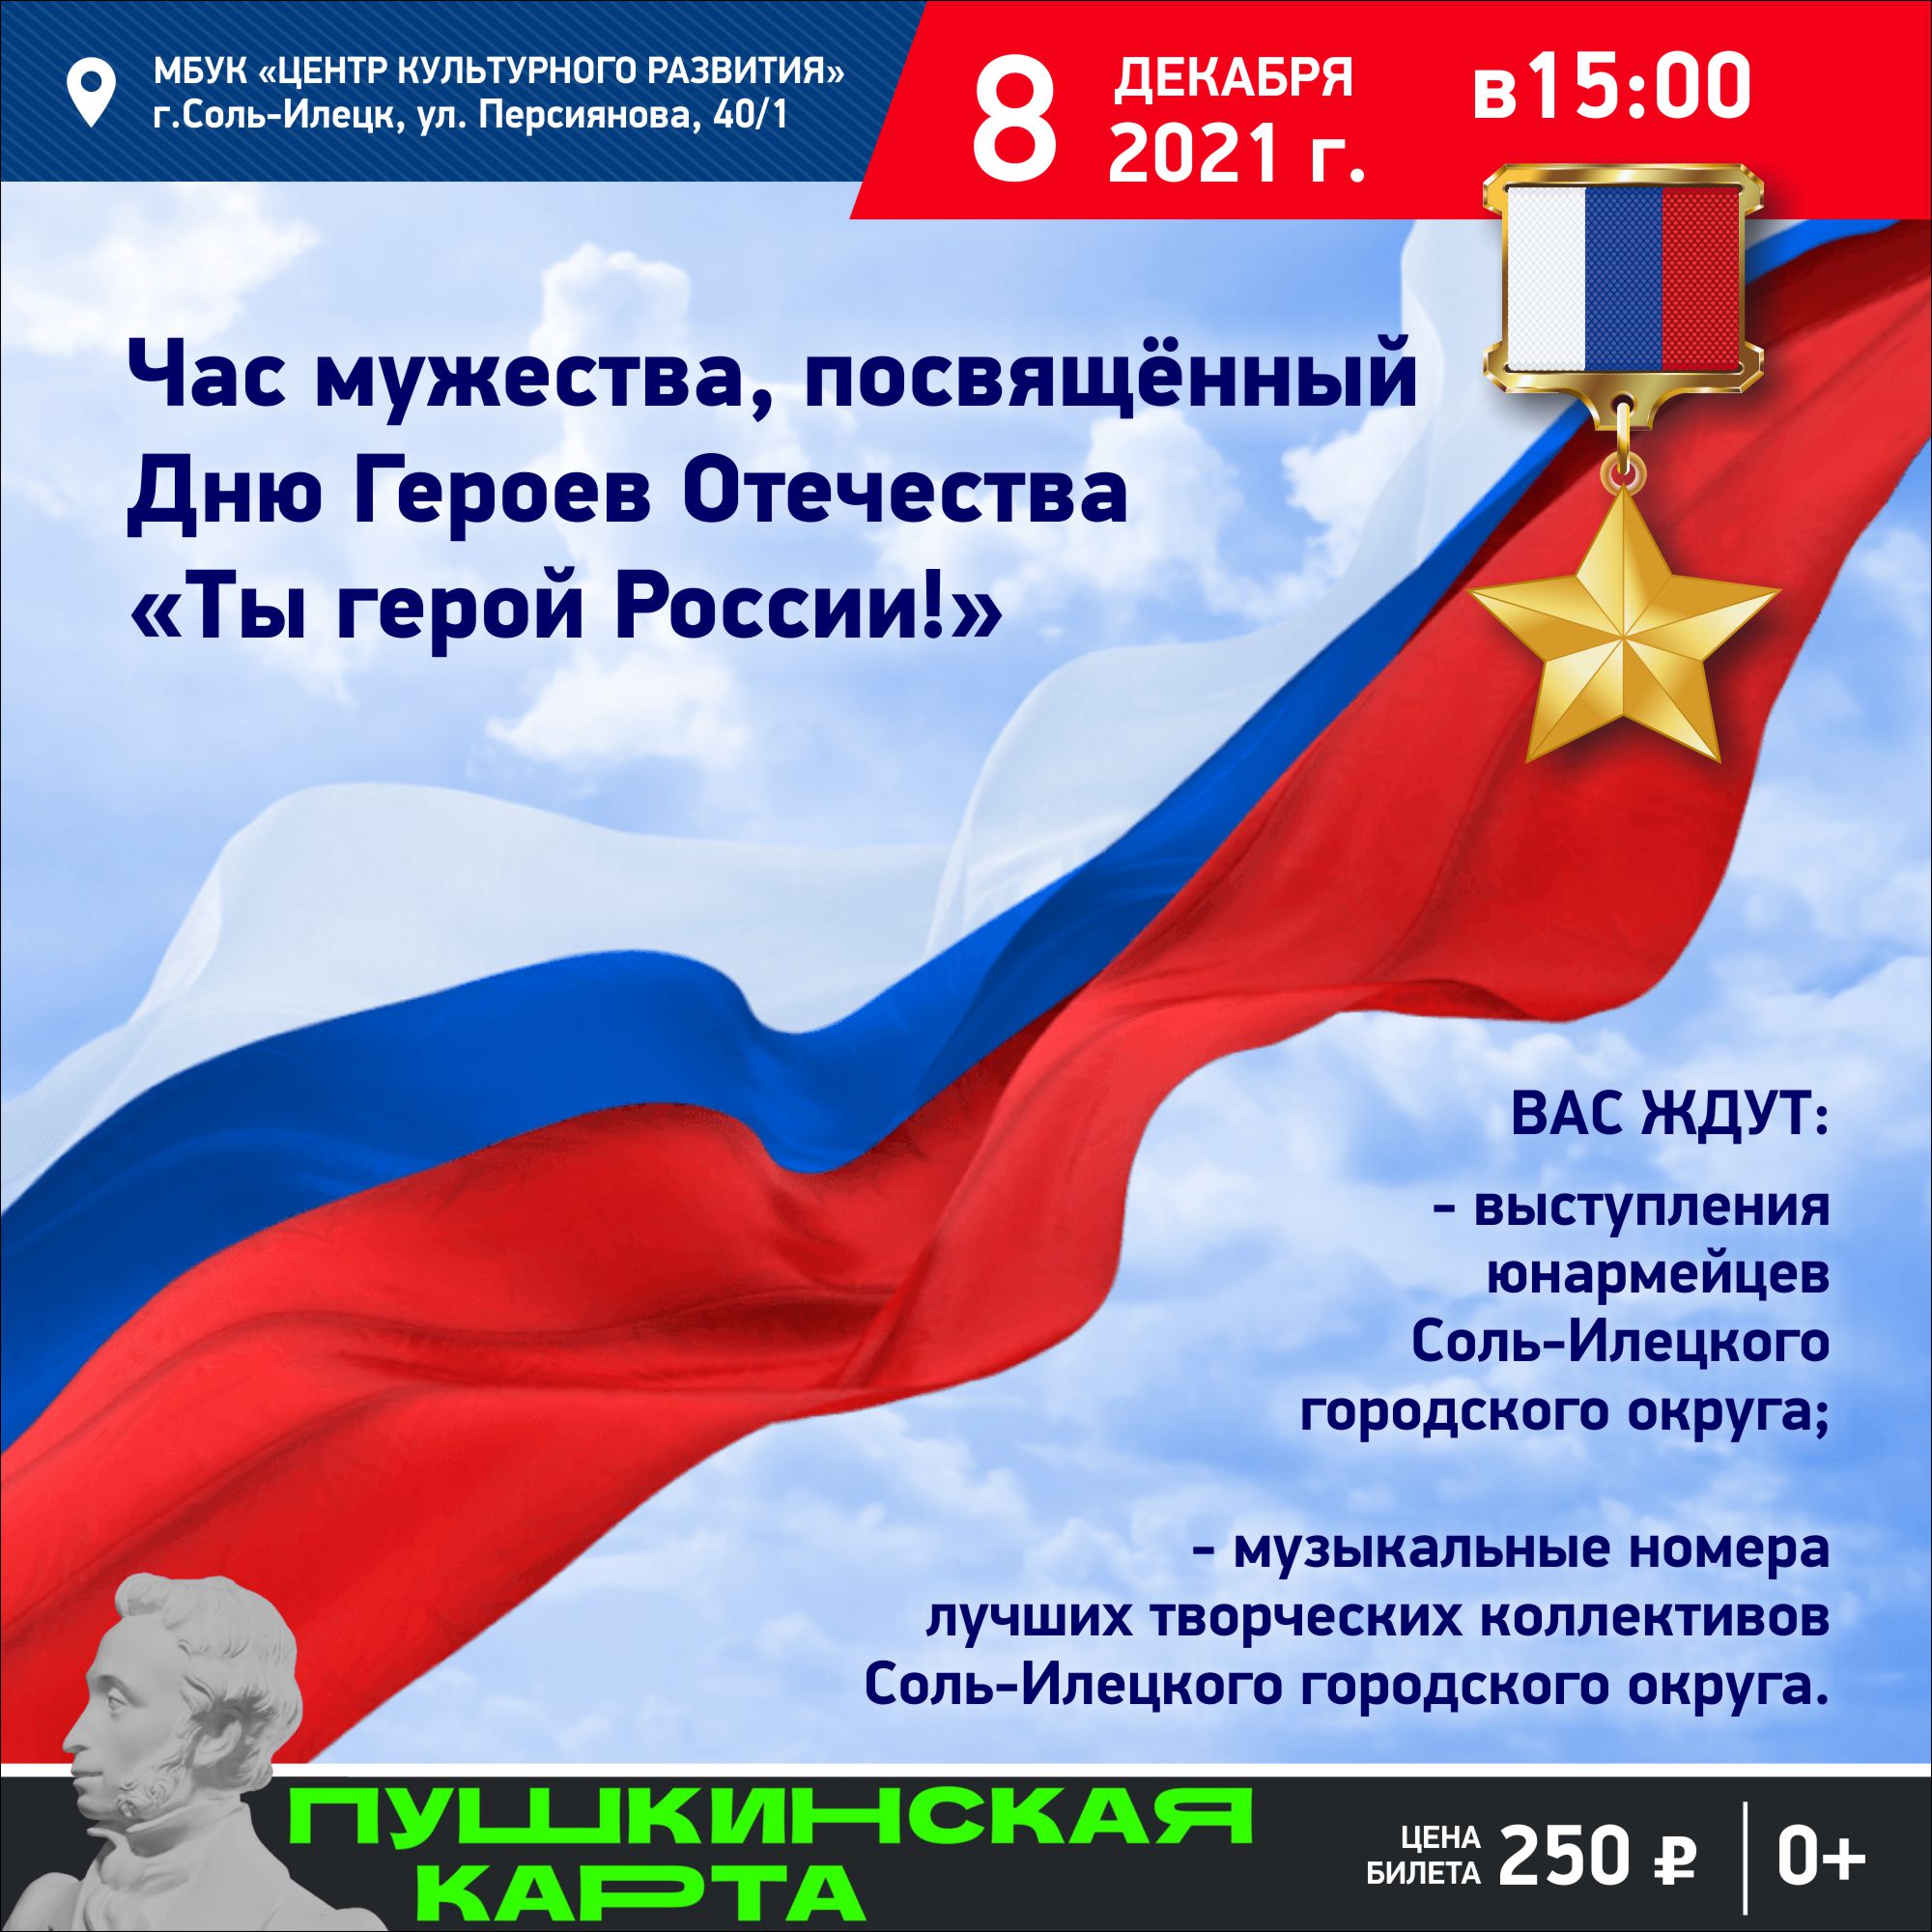 Час мужества, посвященный Дню Героев Отечества «Ты герой России!»